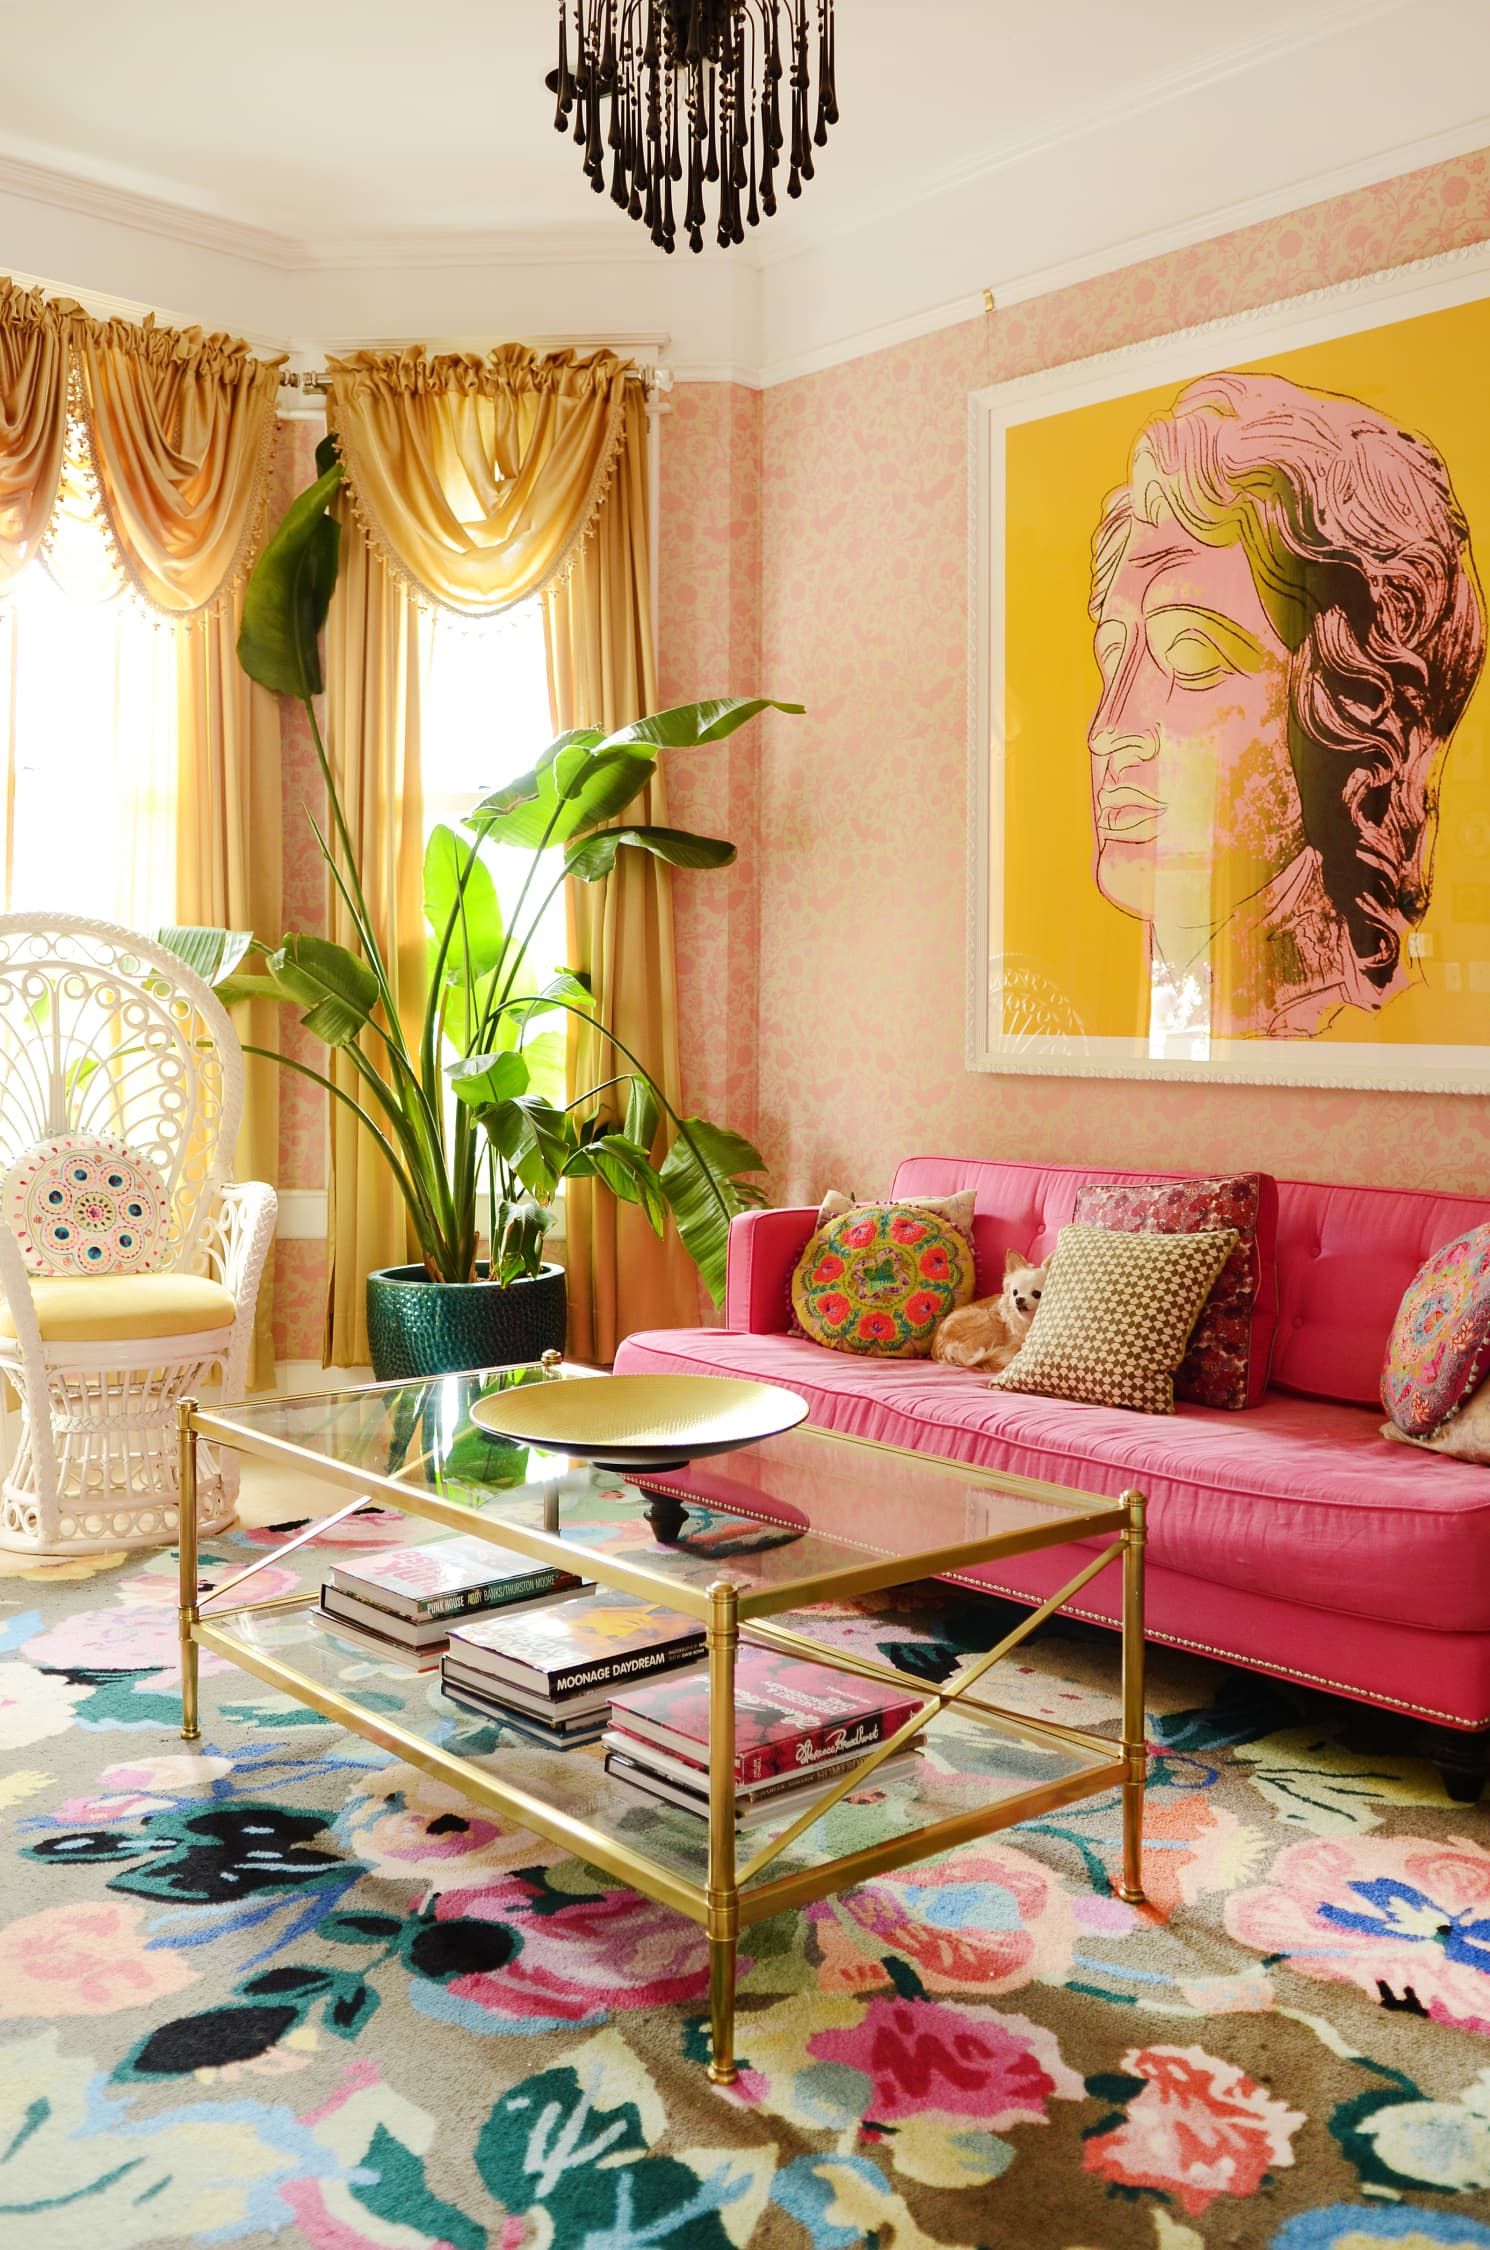 Những ý tưởng thiết kế phòng khách khiến bạn phải xuýt xoa bởi vẻ đẹp thanh lịch, quá đỗi hút hồn - Ảnh 11.